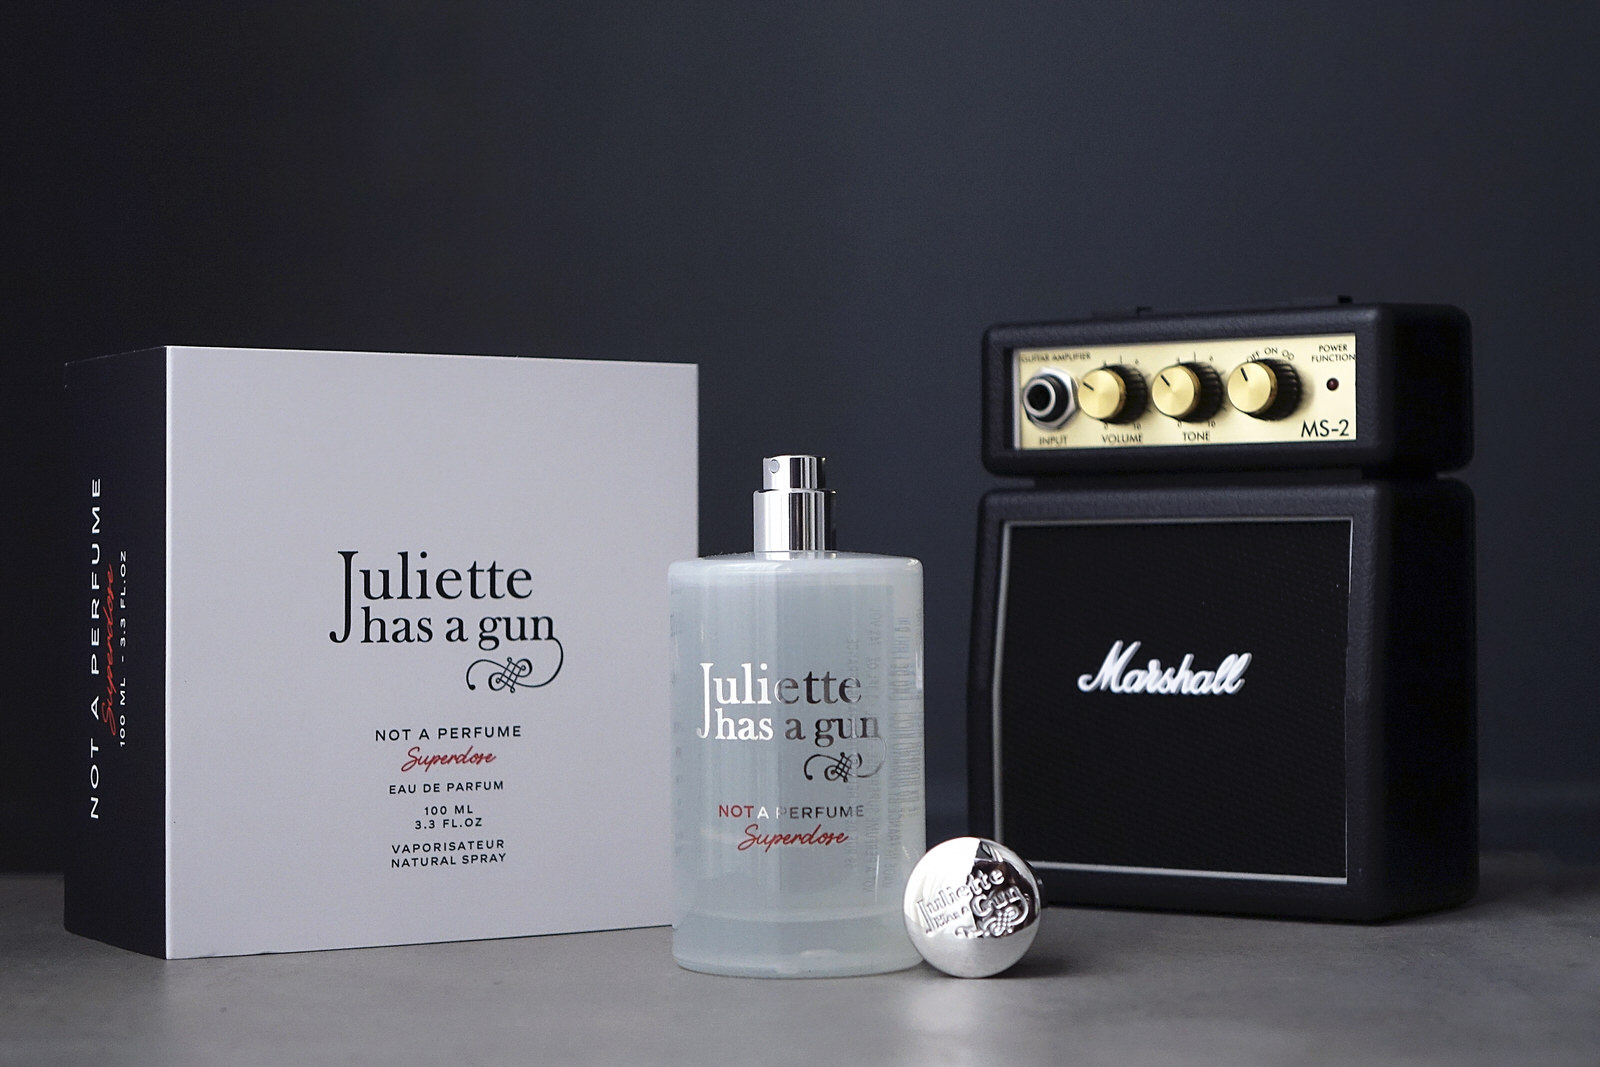 Le nouveau parfum Not a Perfume Superdose de Juliette has a gun